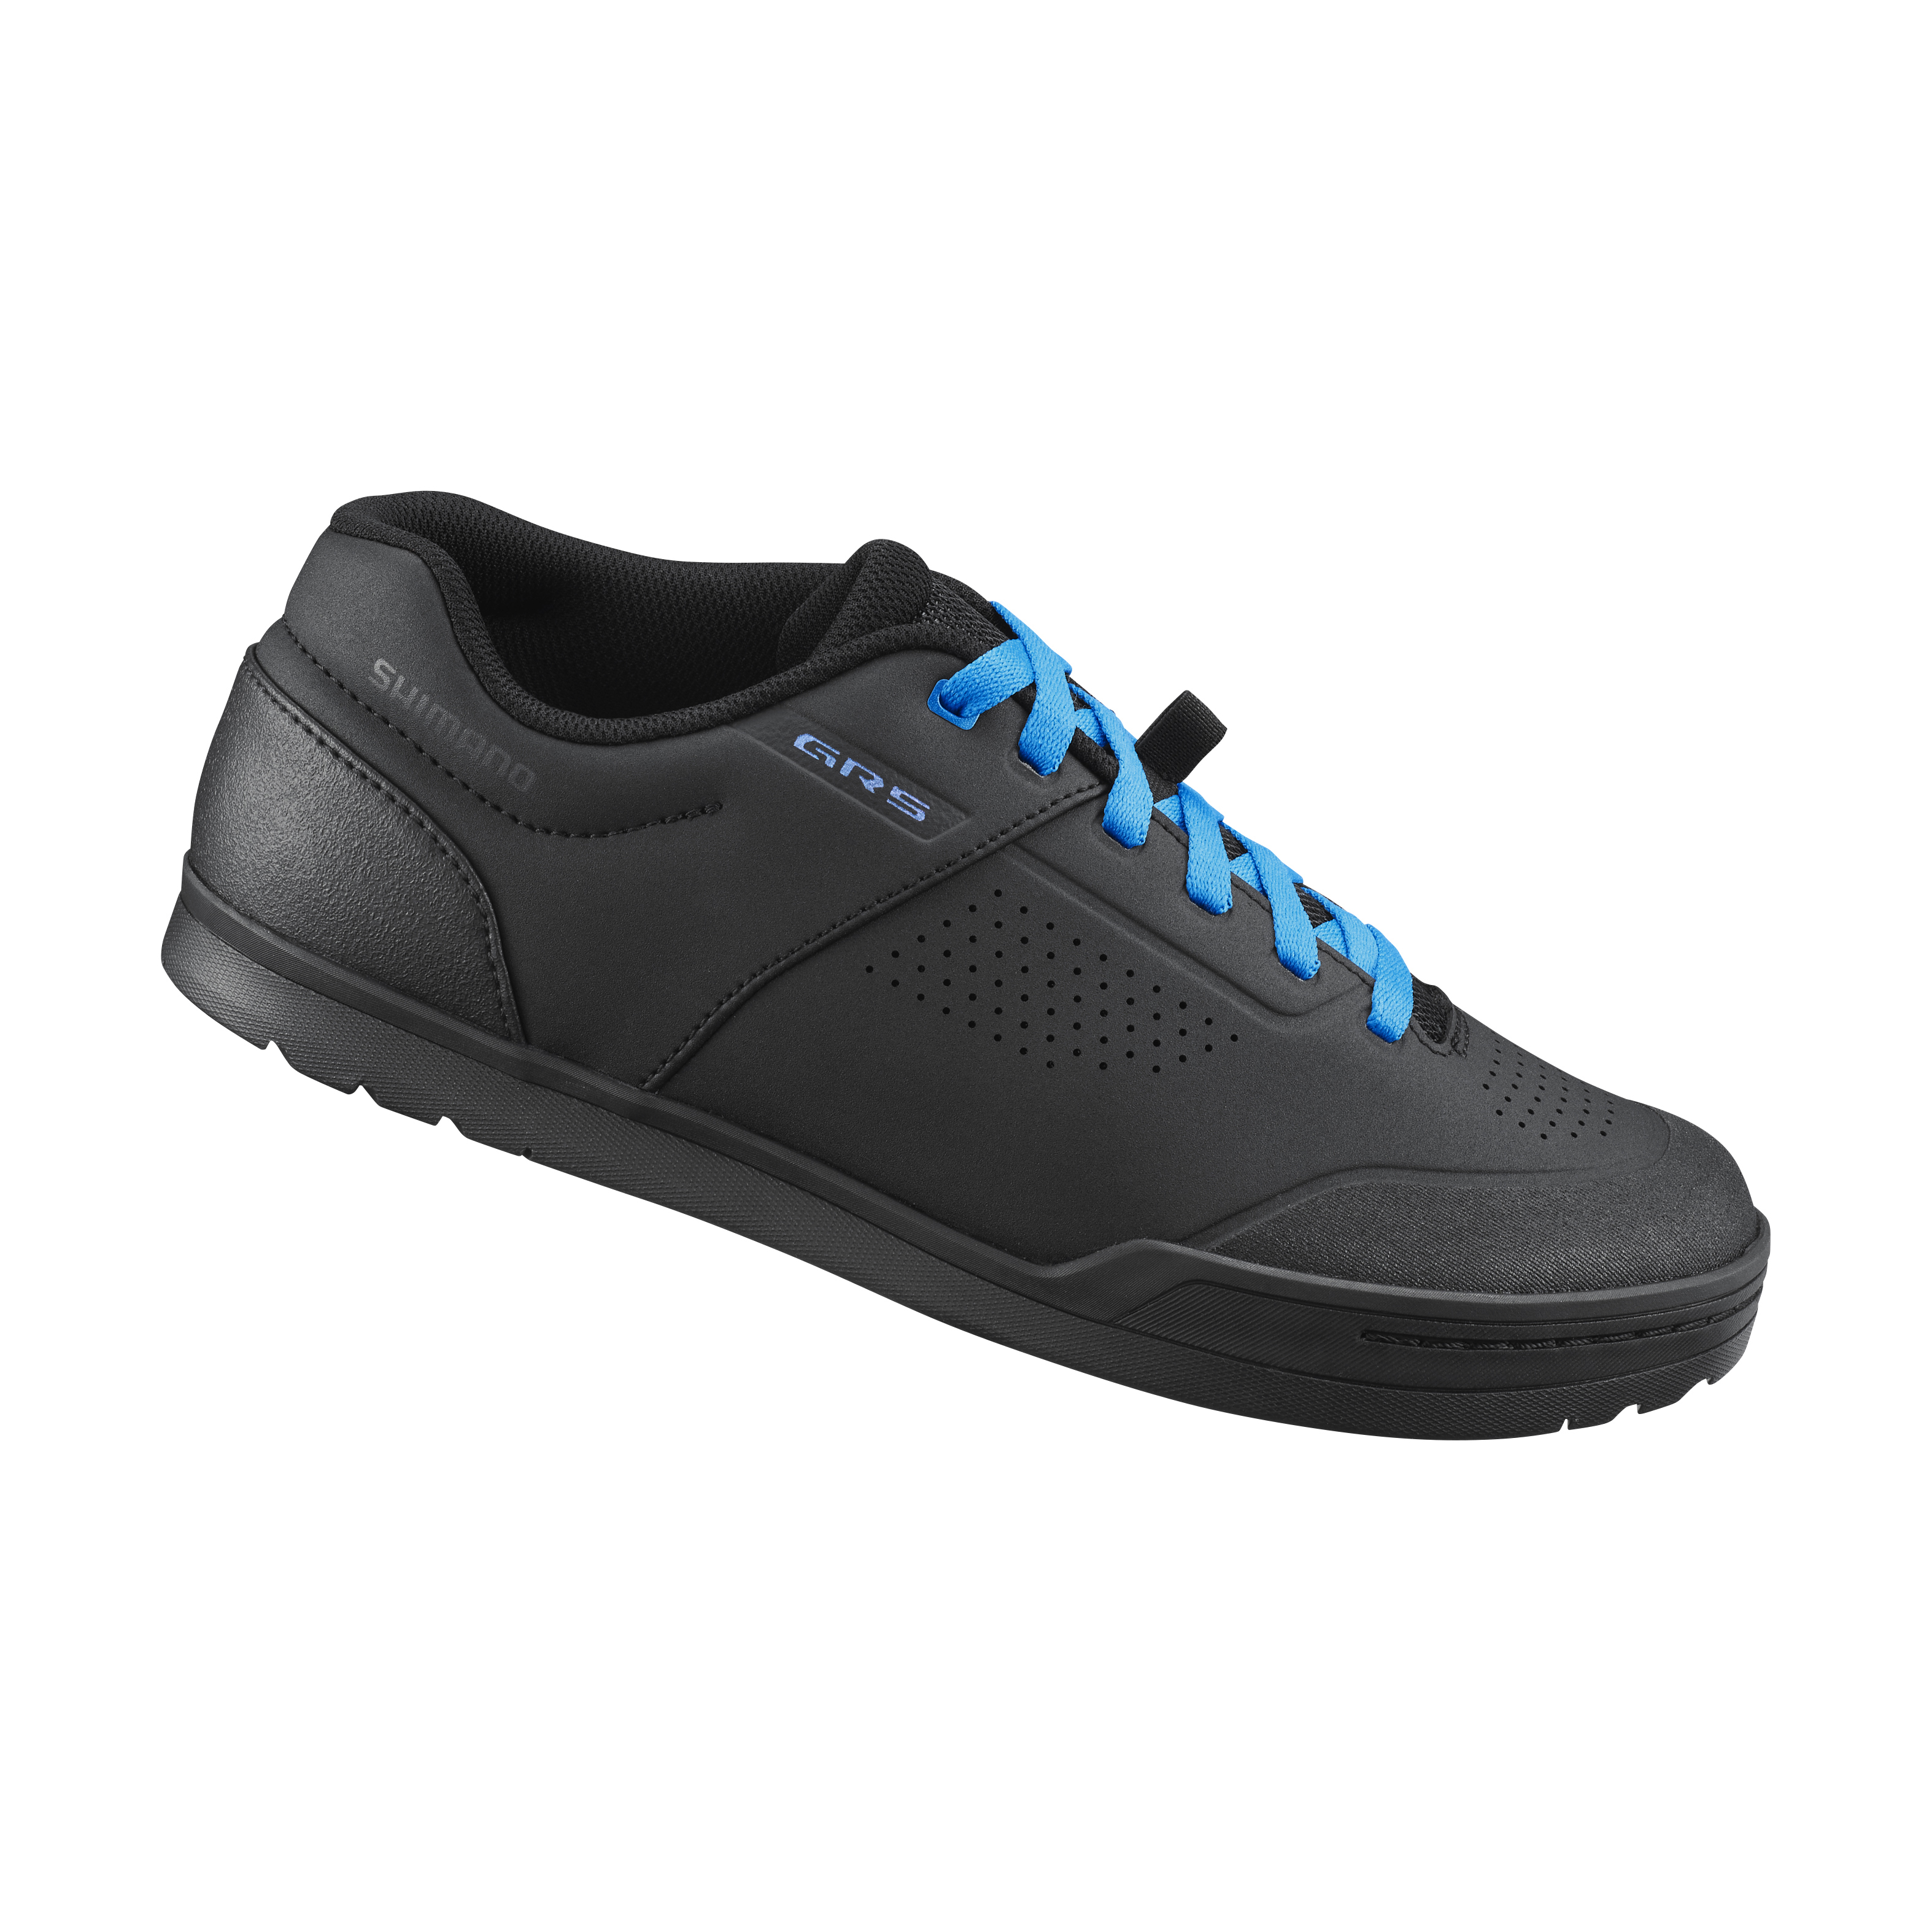 SHIMANO MTB obuv SH-GR501, černá/modrá, 43